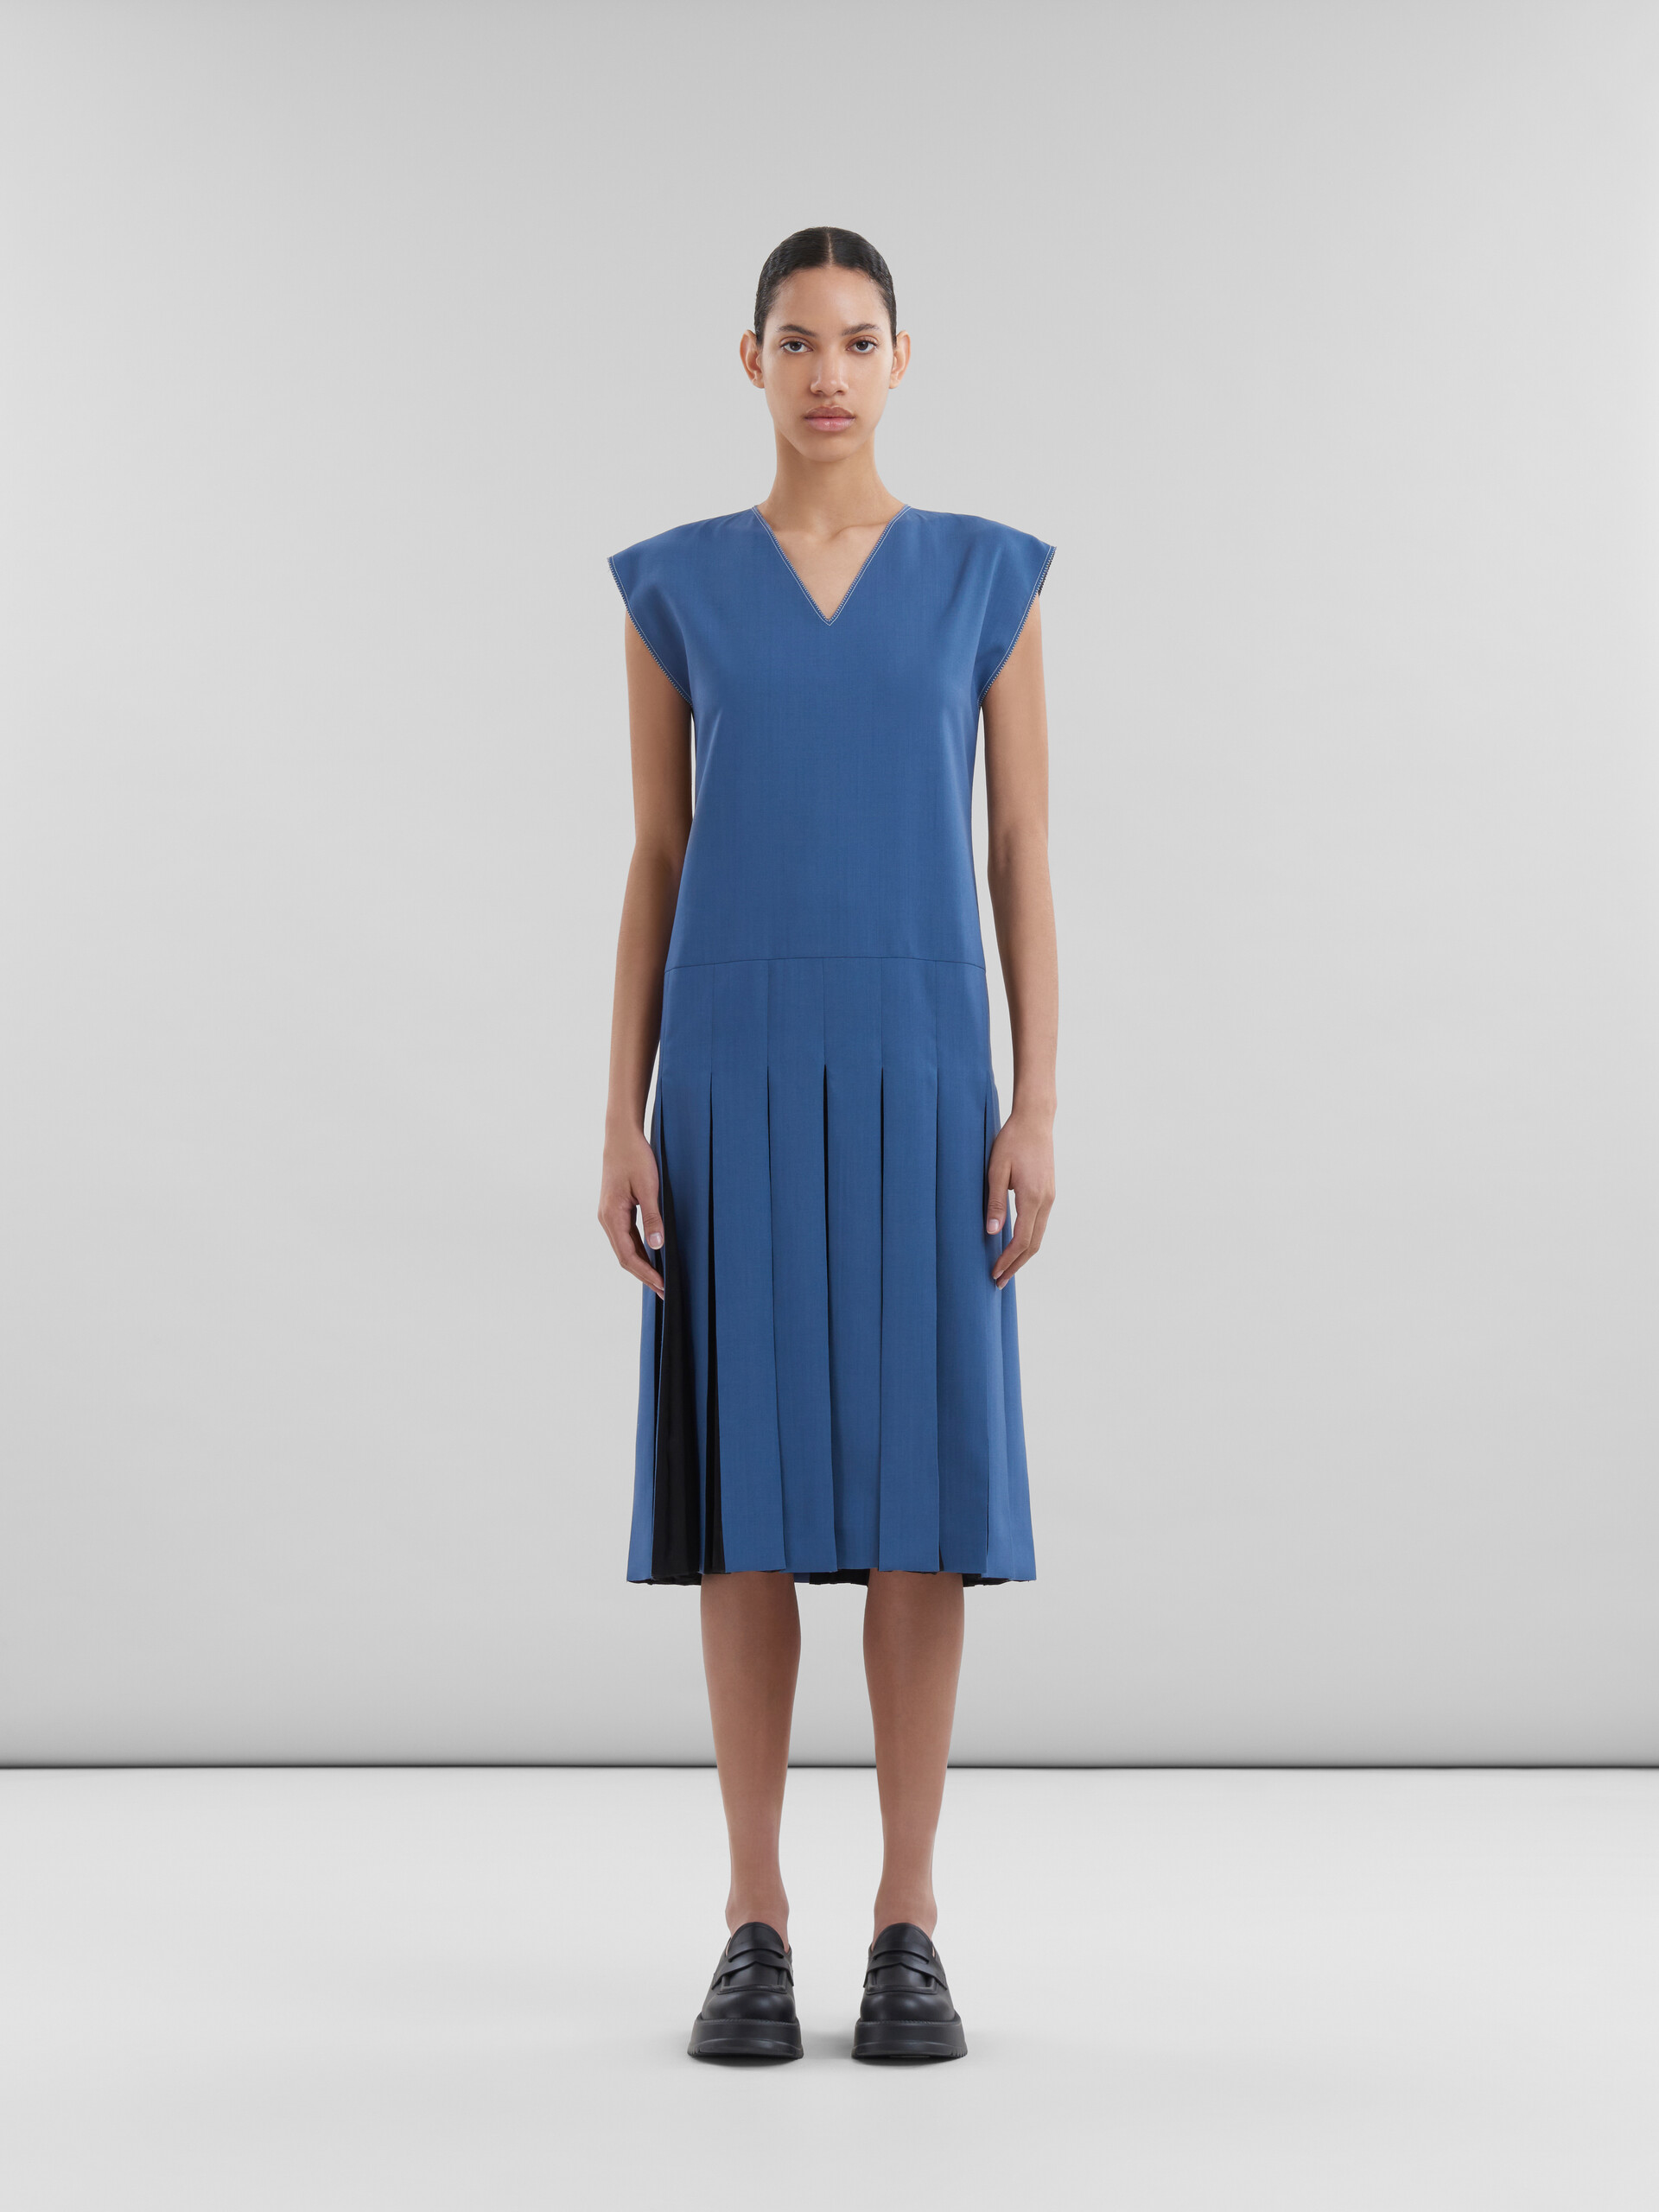 Blaues Kleid aus Tropenwolle mit kontrastierenden Falten - Kleider - Image 2